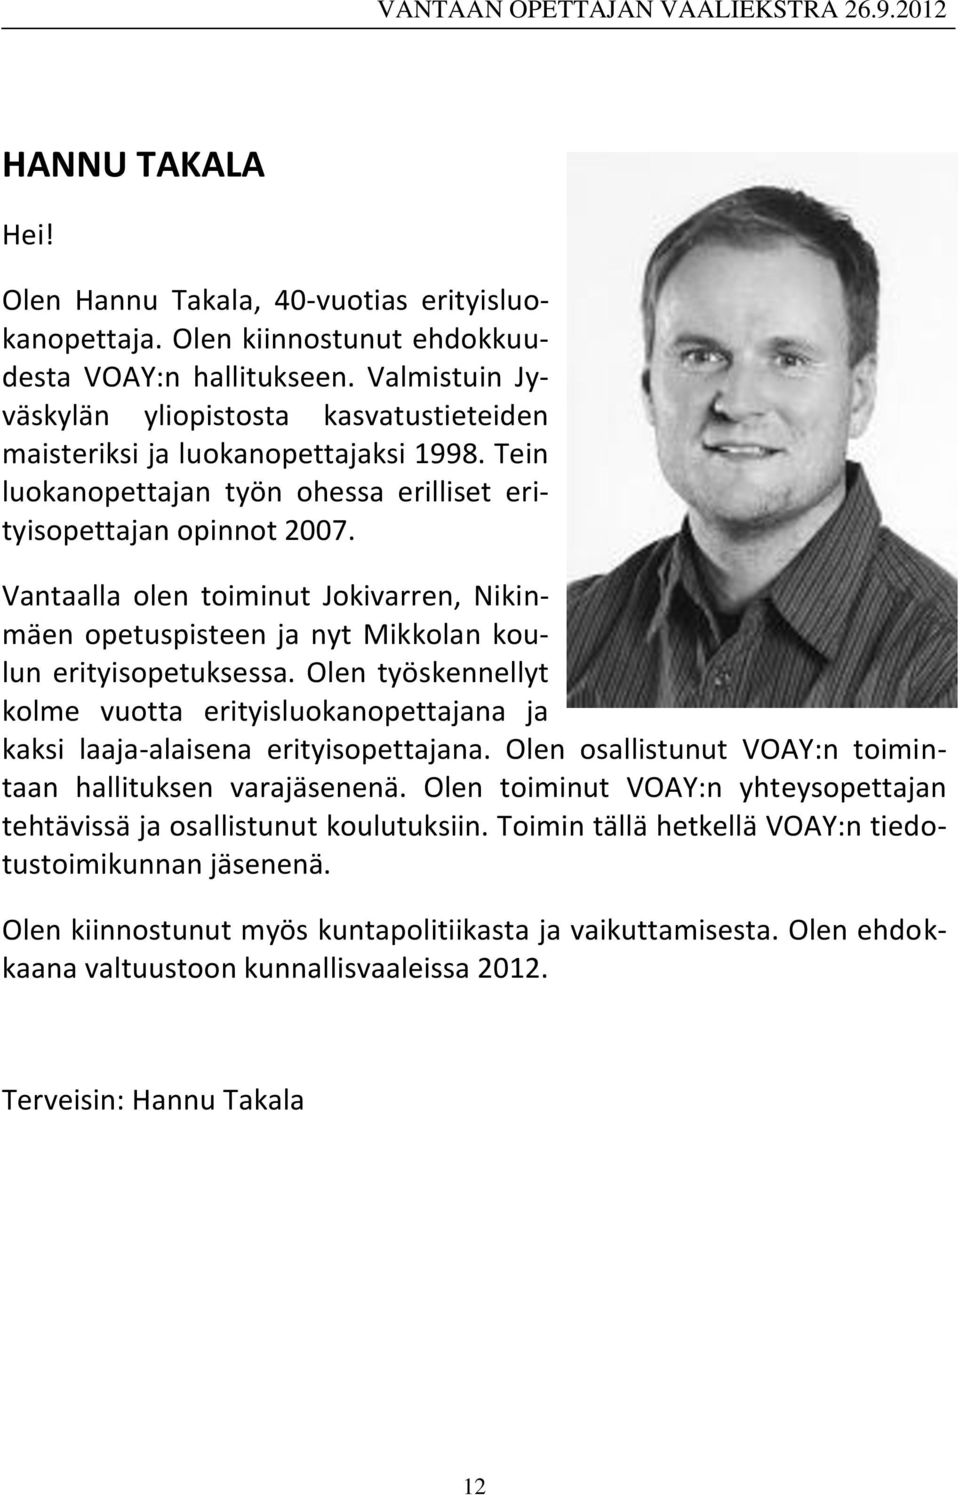 Vantaalla olen toiminut Jokivarren, Nikinmäen opetuspisteen ja nyt Mikkolan koulun erityisopetuksessa.